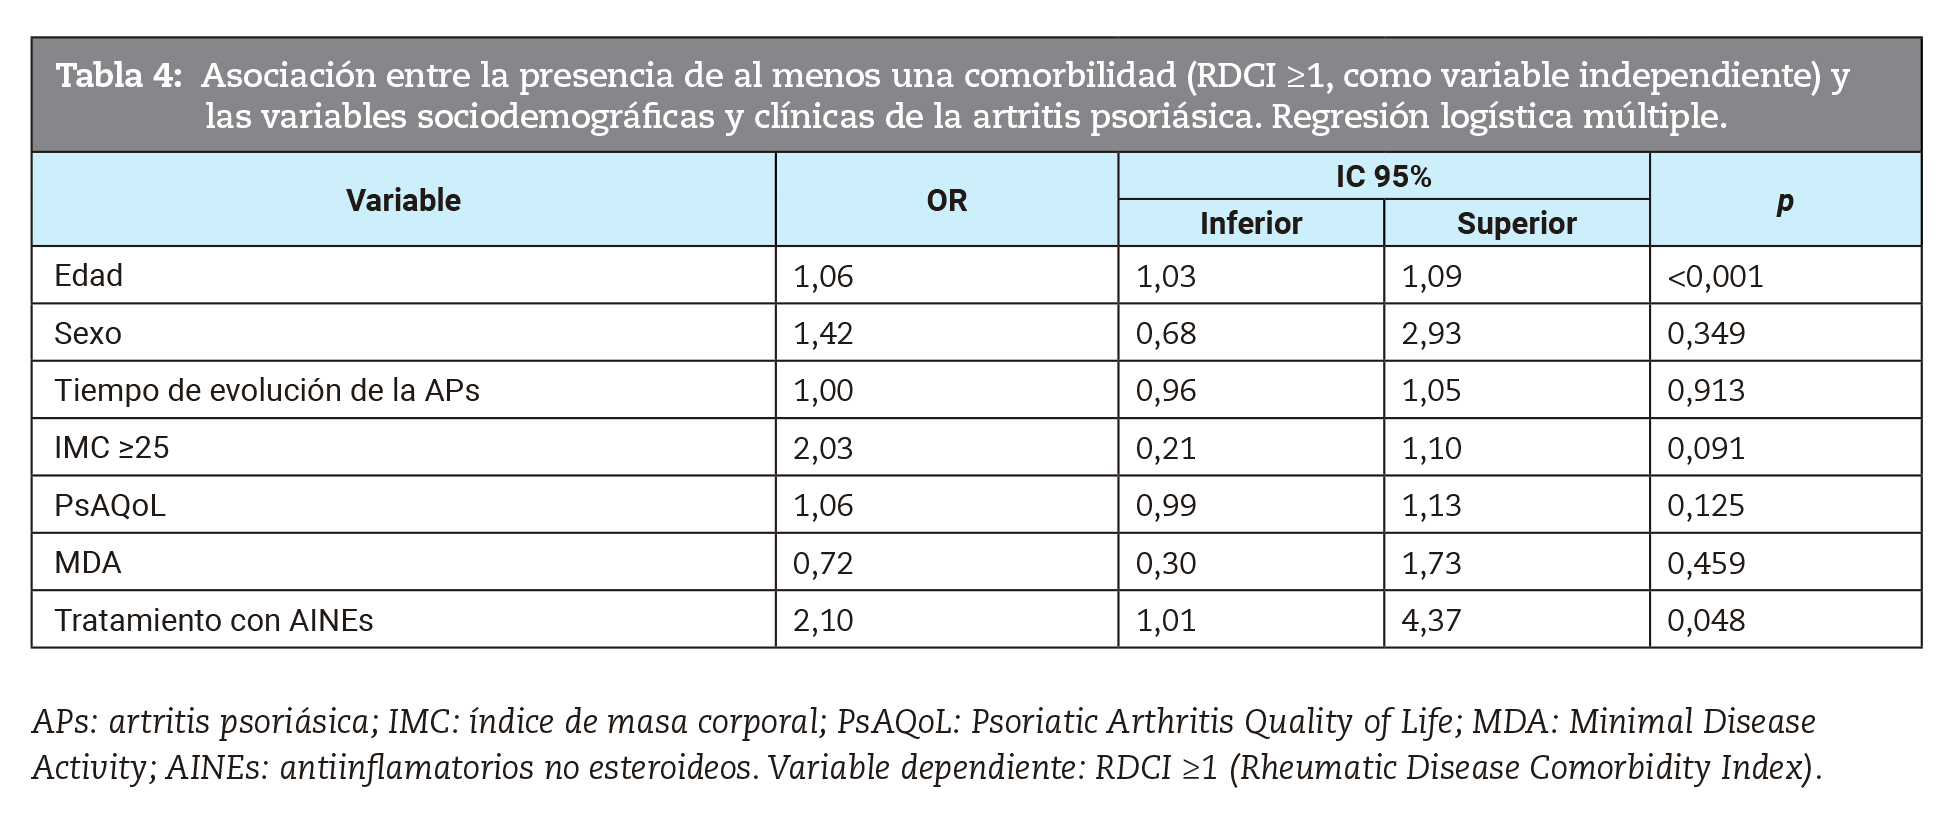 Asociación entre la presencia de al menos una comorbilidad (RDCI ≥1, como variable independiente) y las variables sociodemográficas y clínicas de la artritis psoriásica. Regresión logística múltiple.